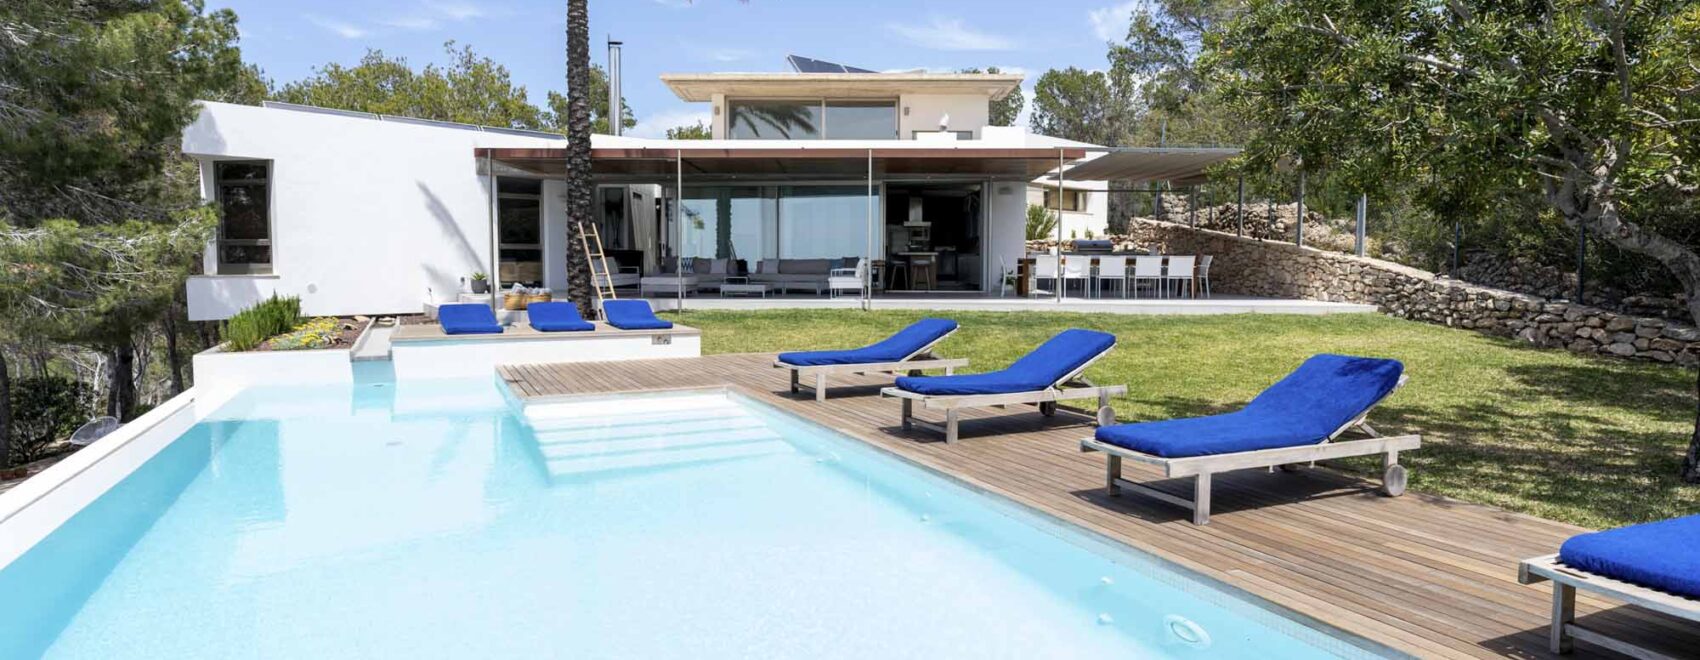 Lujosa Villa Sol Post en Ibiza con una gran piscina, tumbonas y un exuberante jardín, con serenas vistas del atardecer